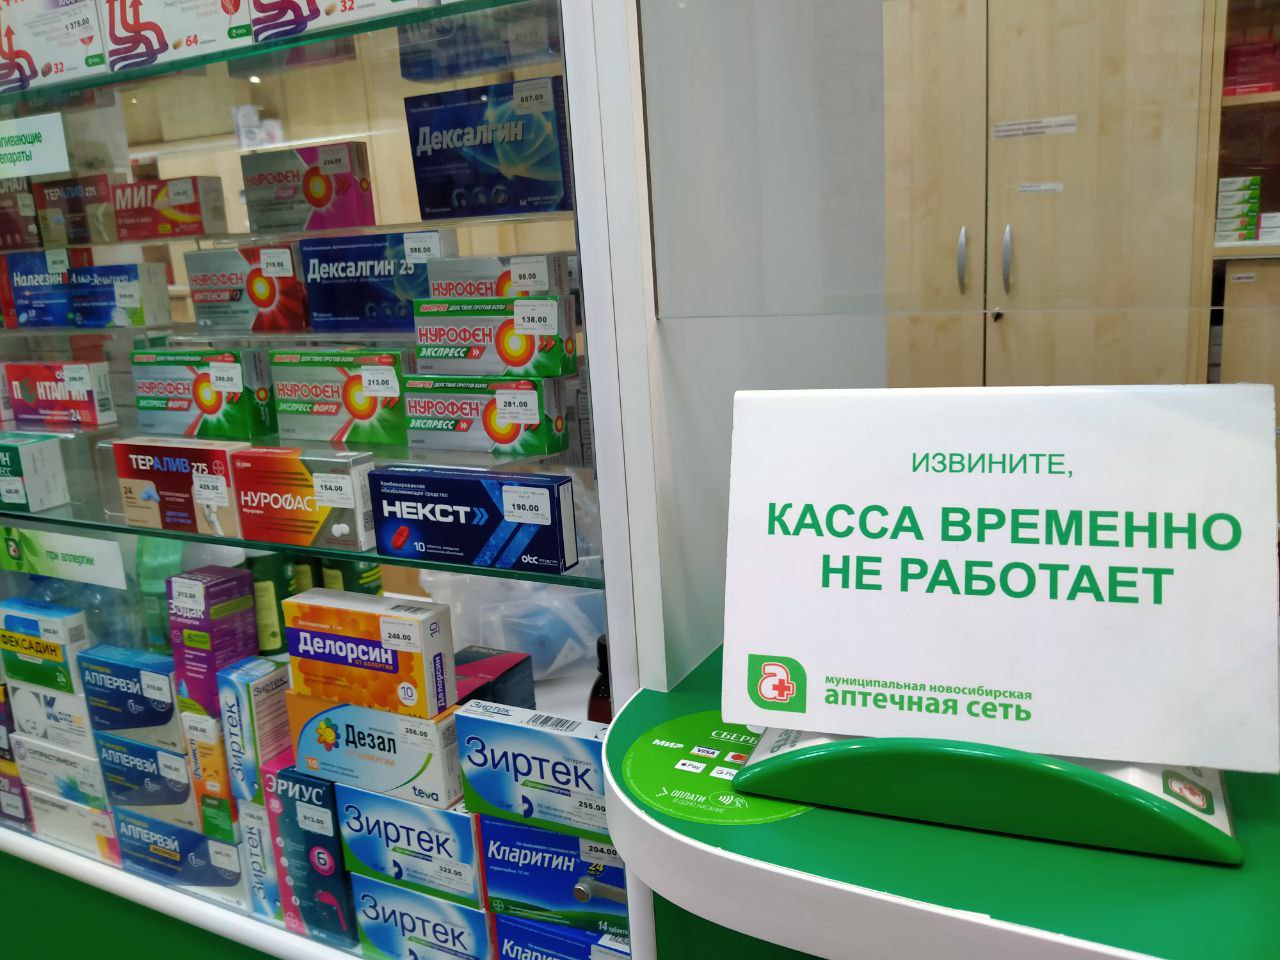 Новосибирская аптечная сеть оказалась под угрозой ликвидации